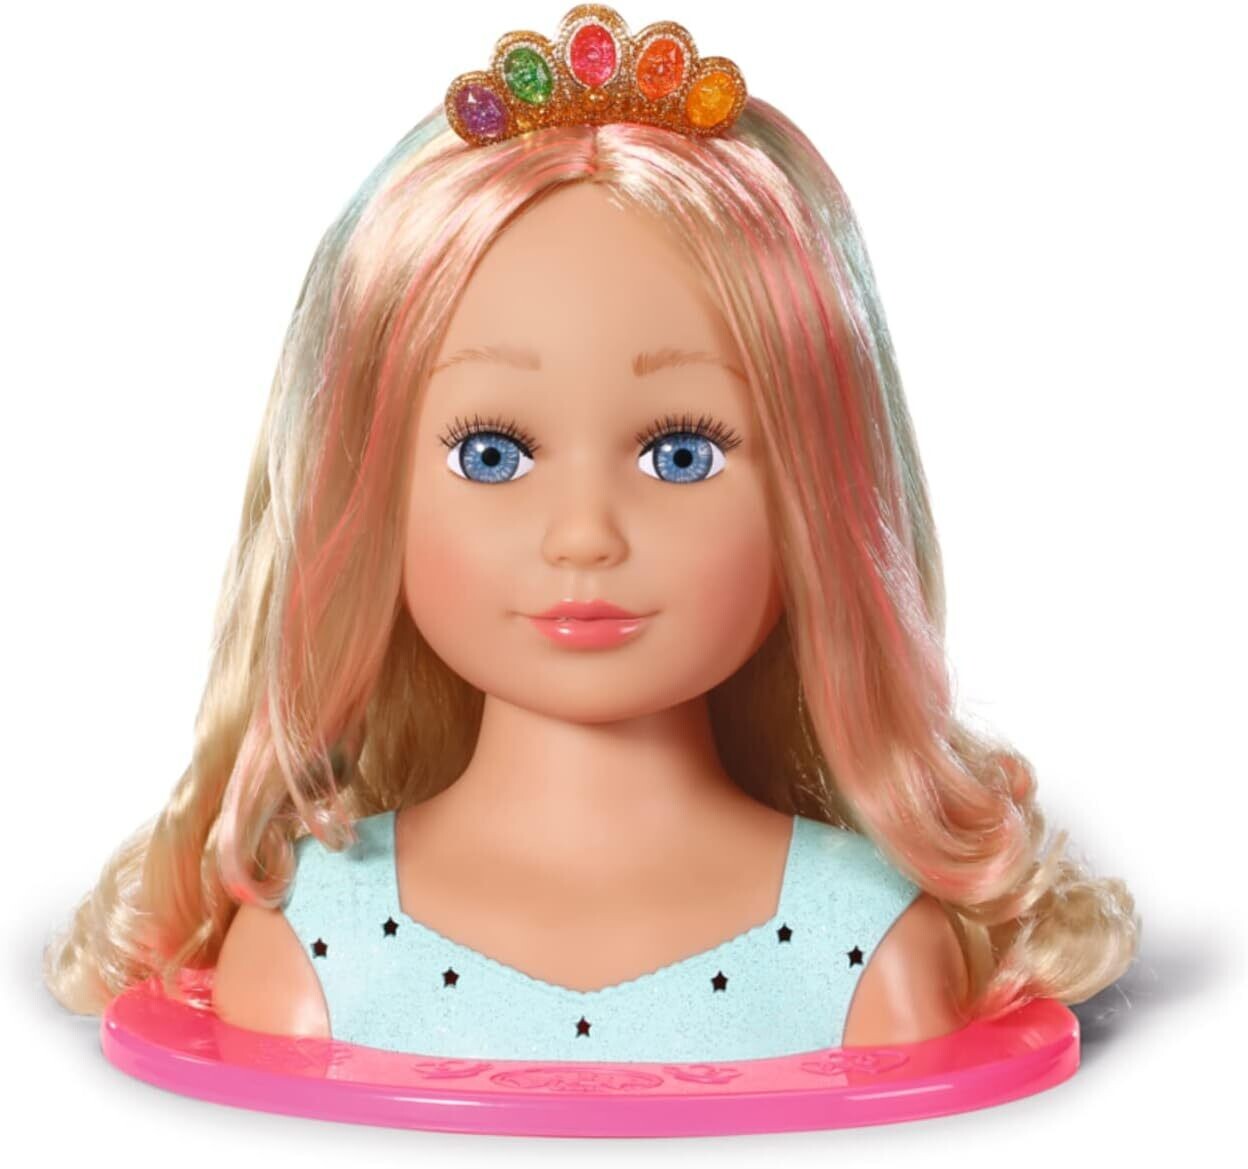 BABY born Sister poupée tête à coiffer de princesse avec cheveux blonds et palette de maquillage - comprend 32 accessoires pour cheveux - convient aux enfants de 3 ans et plus